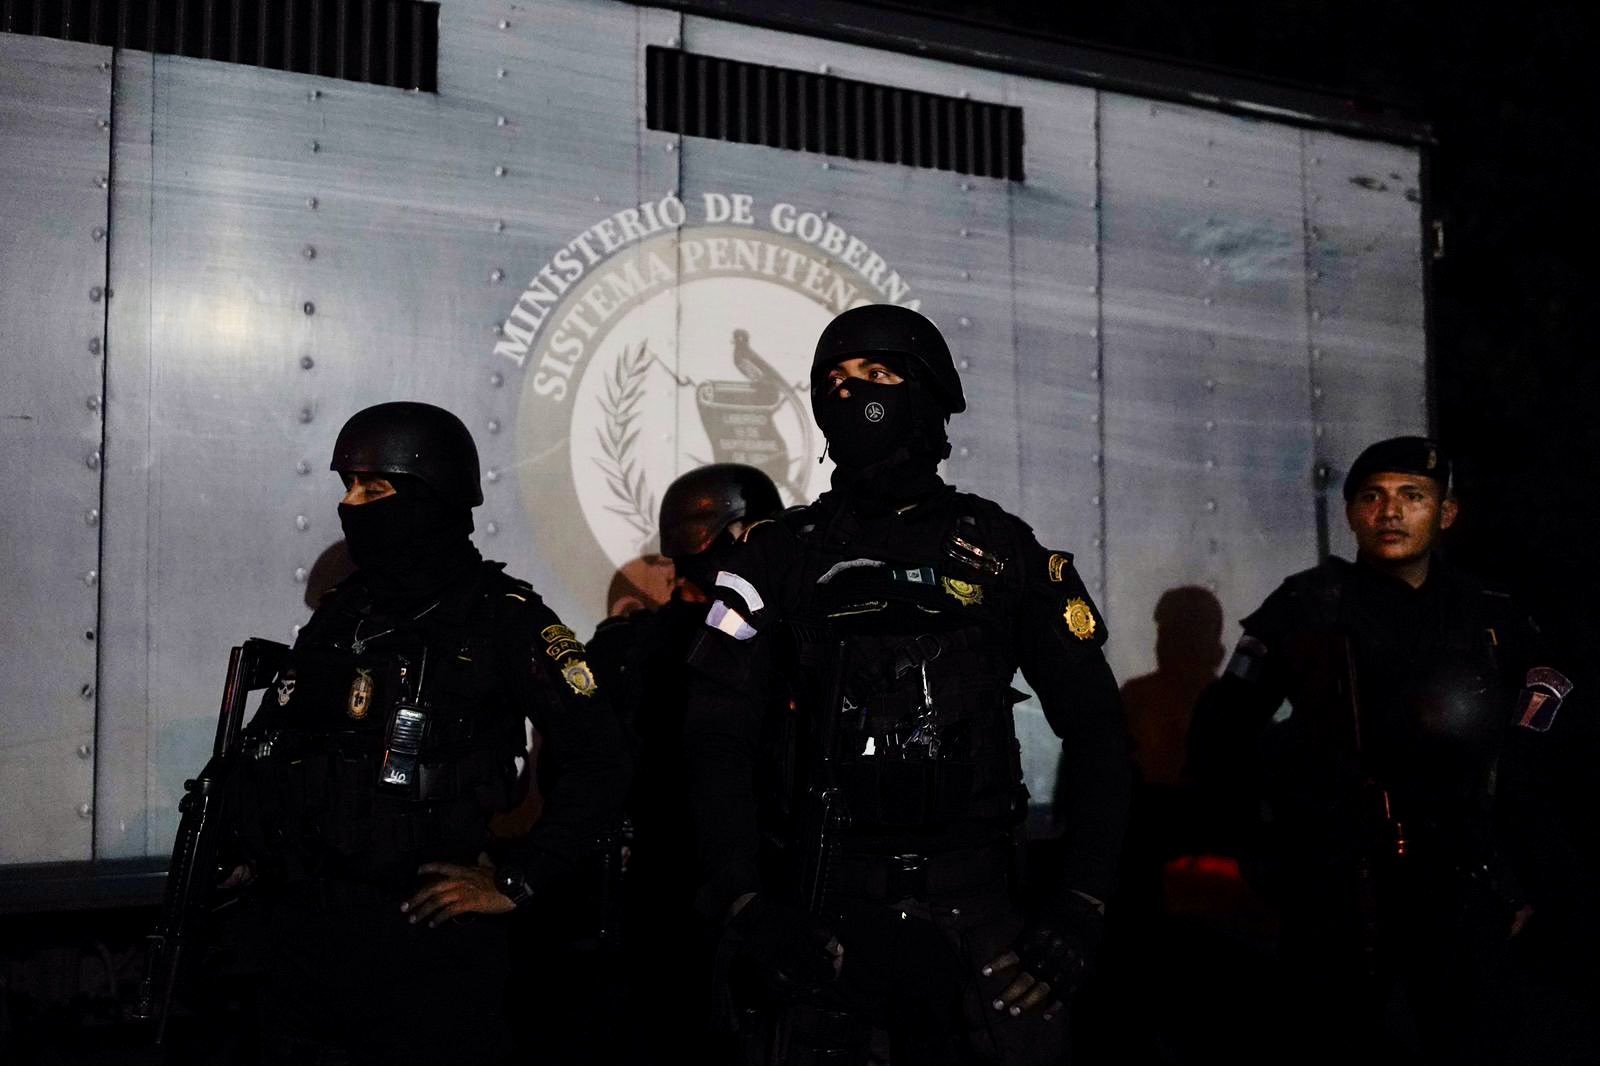 Decenas de policías mantienen un operativo en la cárcel El Infiernito en busca de retomar el control (Foto Prensa Libre: Mingob)